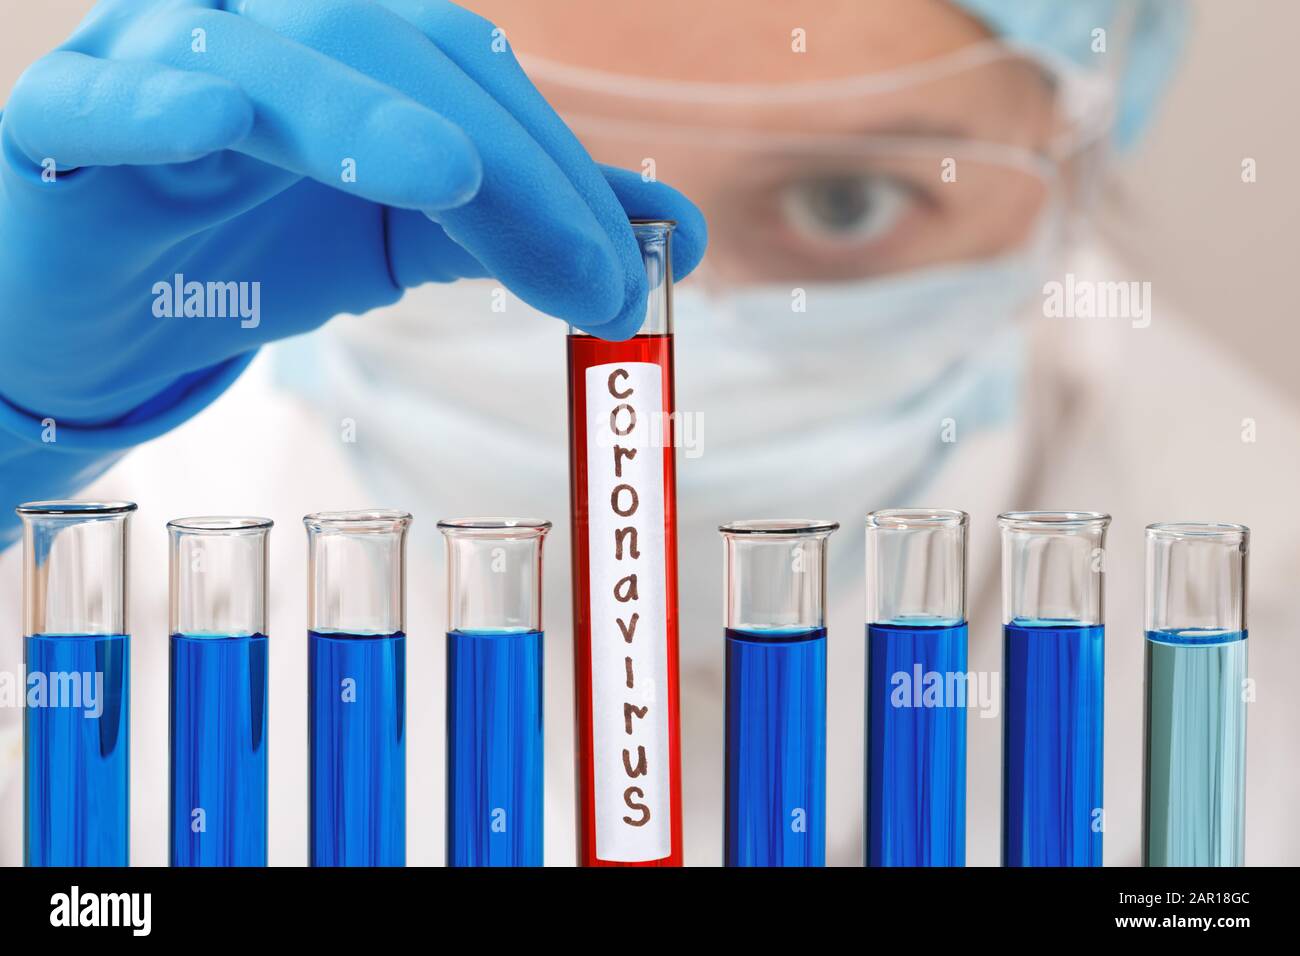 Dans un laboratoire de chimie, une chercheuse féminine possède un tube à essai avec le virus du coronavirus. Analyse, protection et médicaments pour lutter contre l'épidémie. Banque D'Images